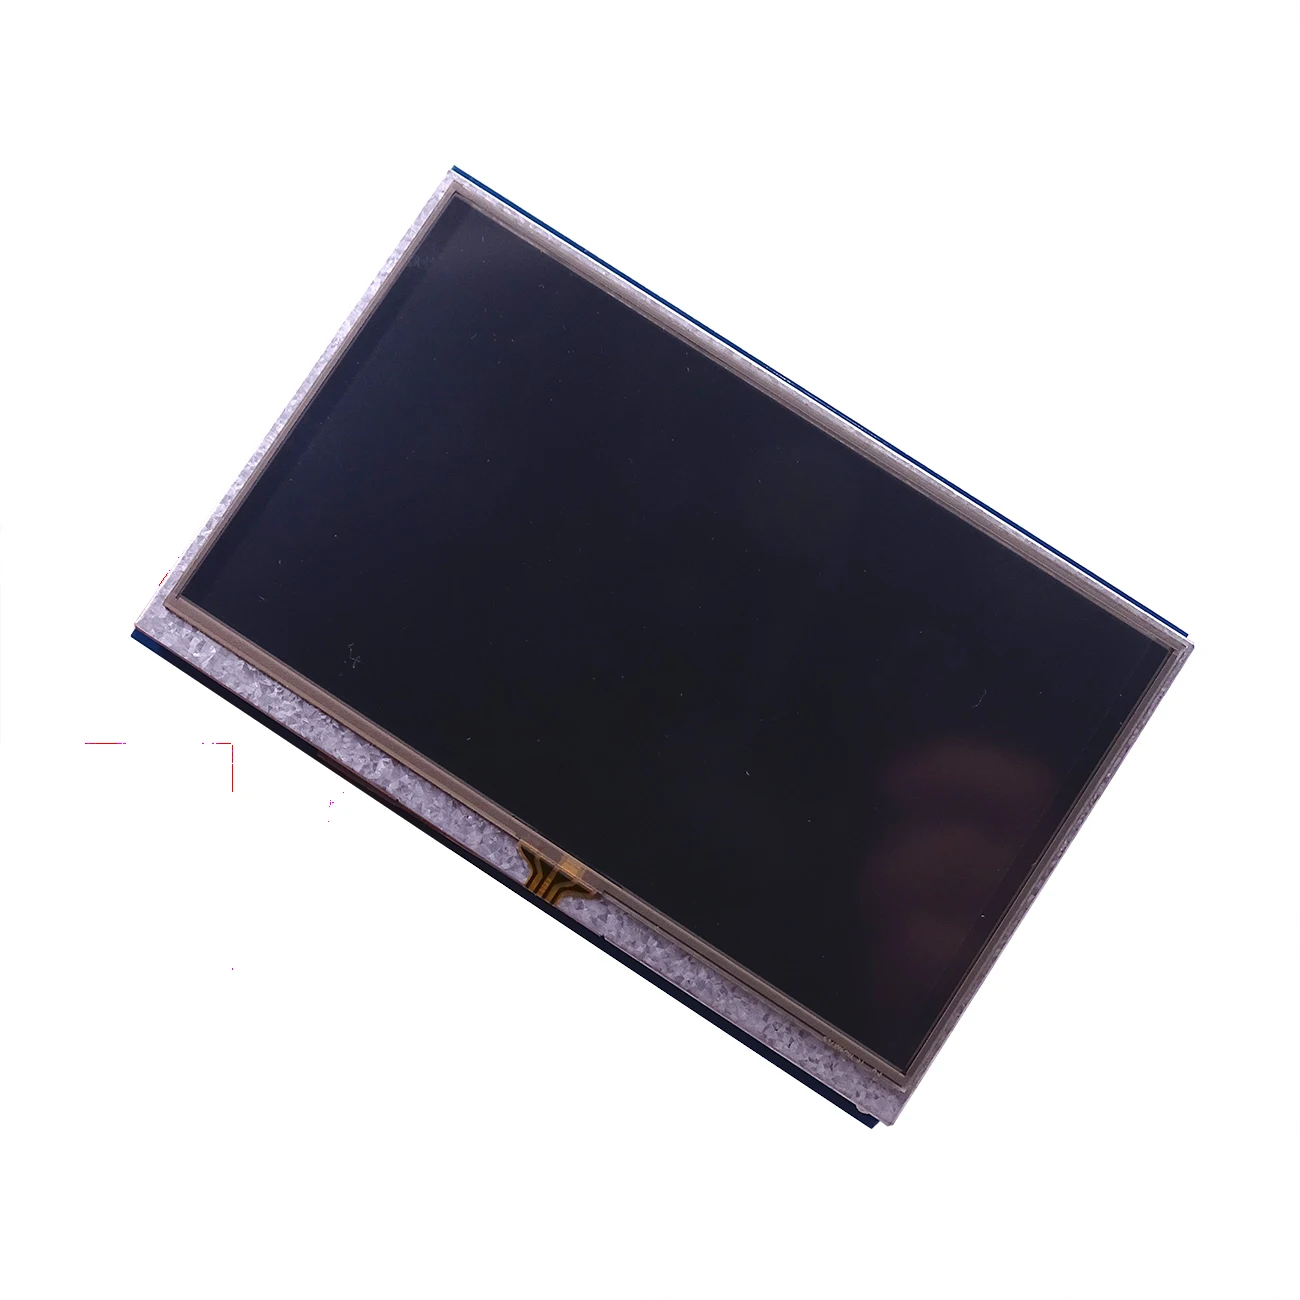 Новинка 5 дюймов ЖК-дисплей HDMI Сенсорный экран Дисплей на тонкопленочных транзисторах на тонкоплёночных транзисторах ЖК-дисплей Панель модуль 800*480 для Banana Pi Raspberry Pi 2 Raspberry Pi 3 Model B/B